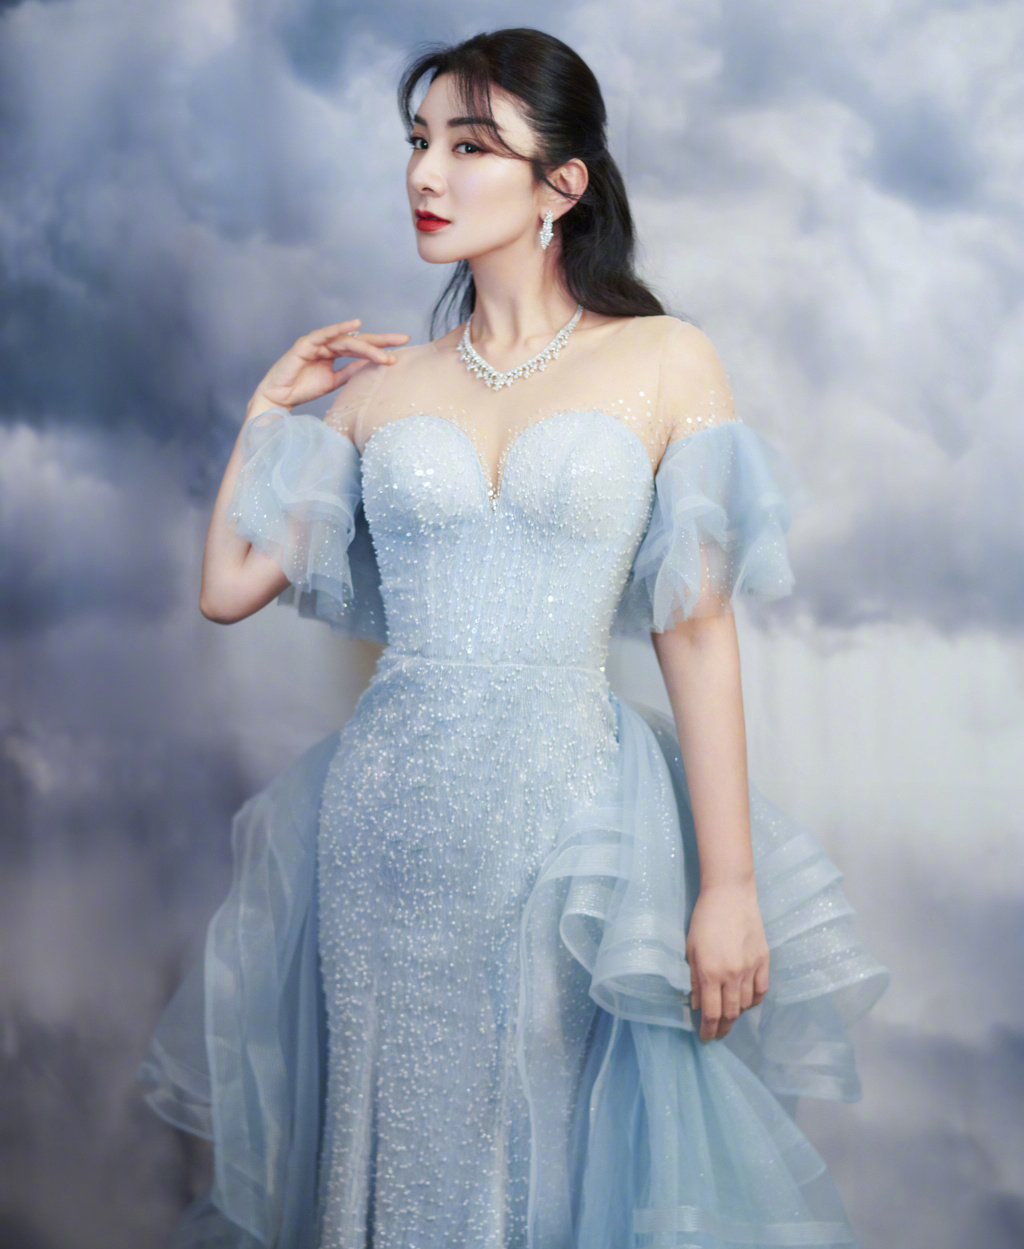 近日，黄奕出席2020时尚cosmo盛典并拍摄写真。她身穿蓝鱼尾长裙似人鱼公主，气质温柔身材曼妙。